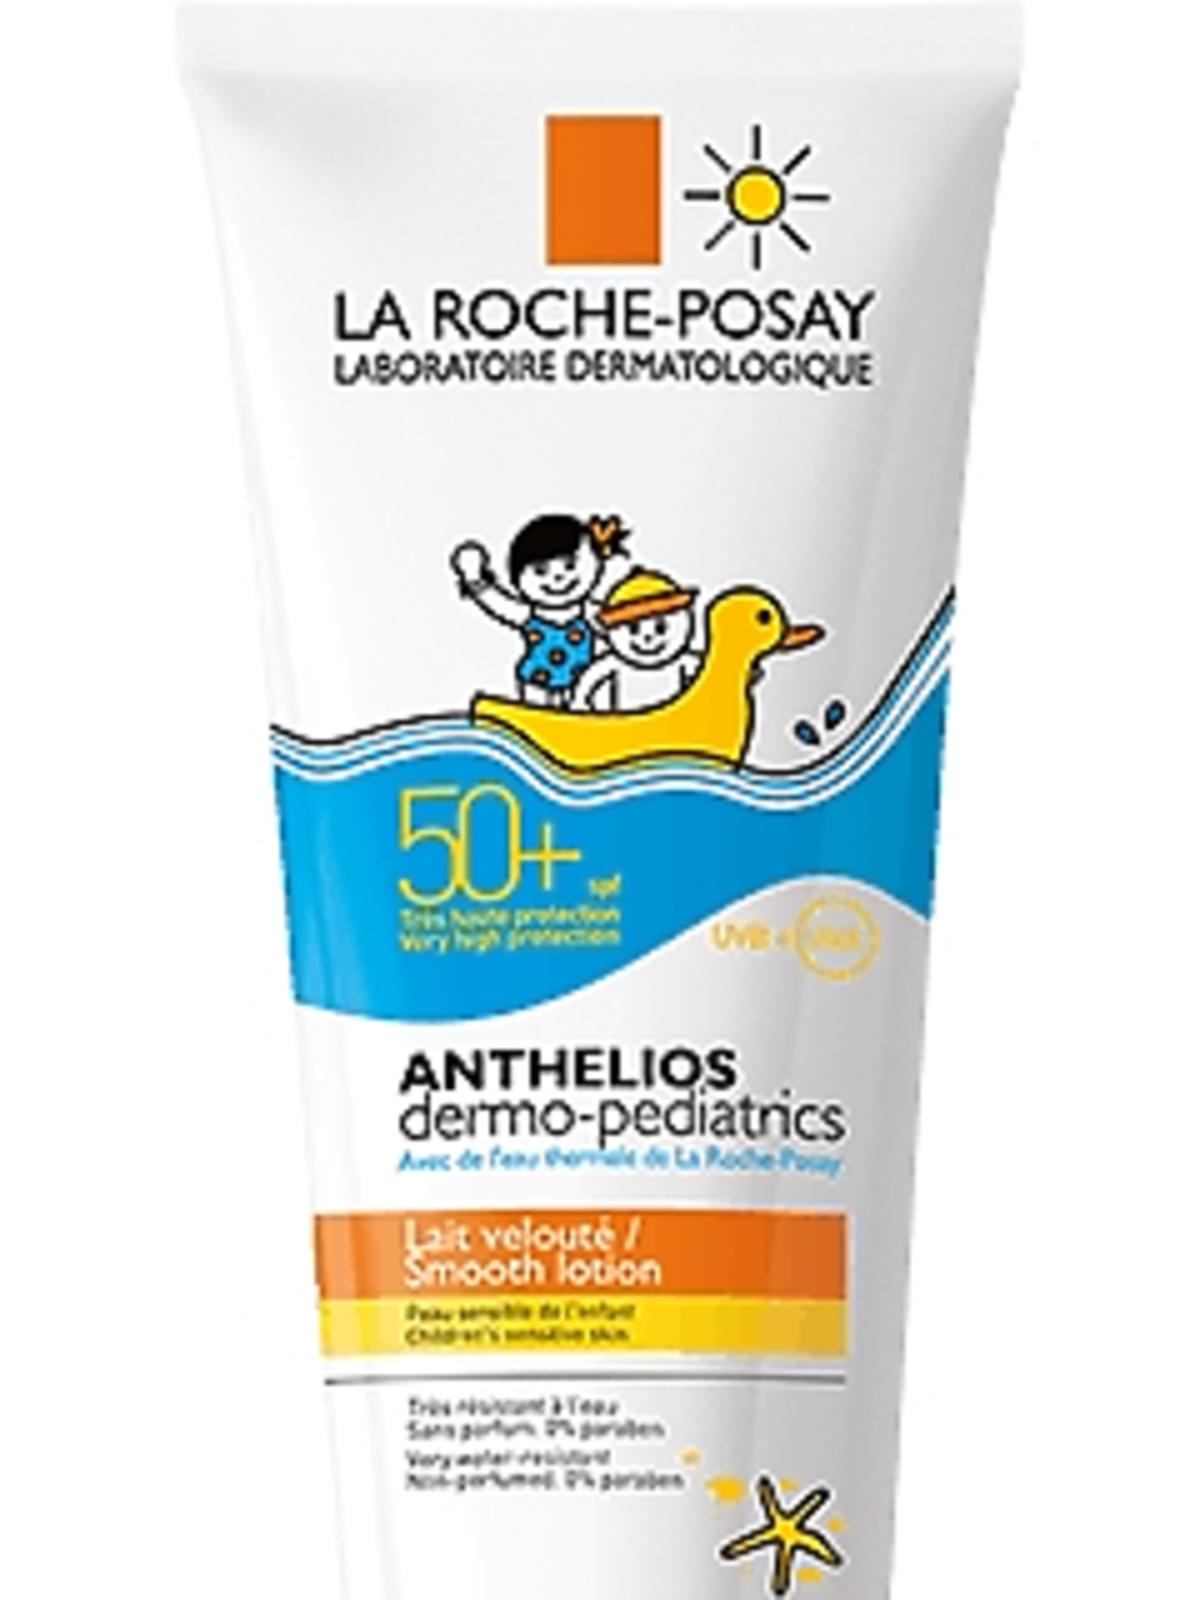 la roche-posay anthelios SPF 50 dla dzieci